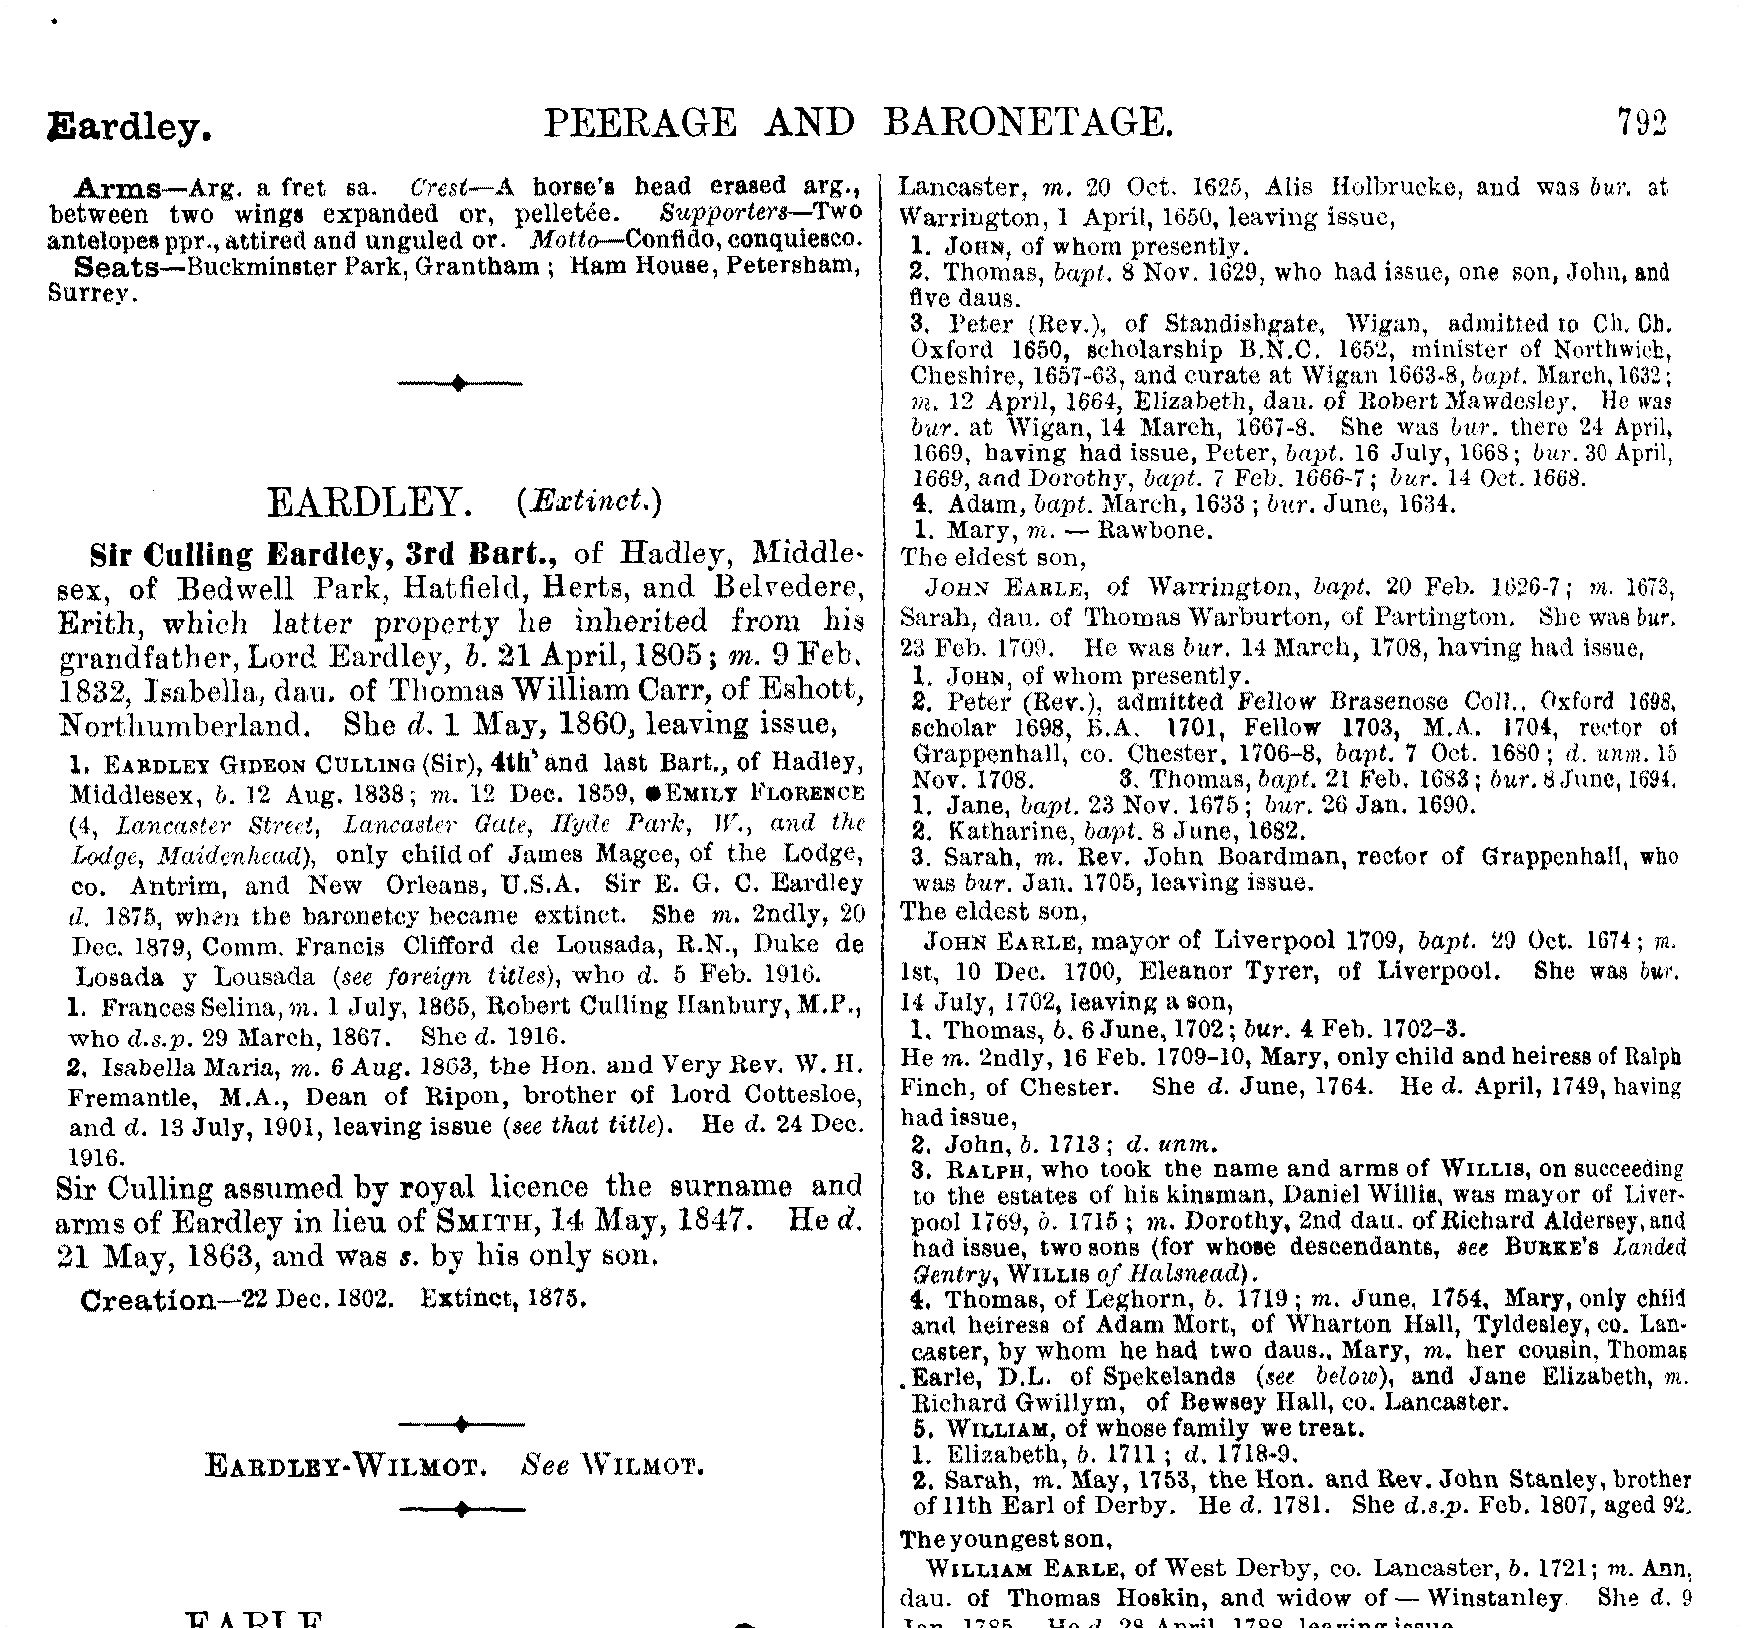 Burke’s Peerage and Baronetage 1921 on TheGenealogist